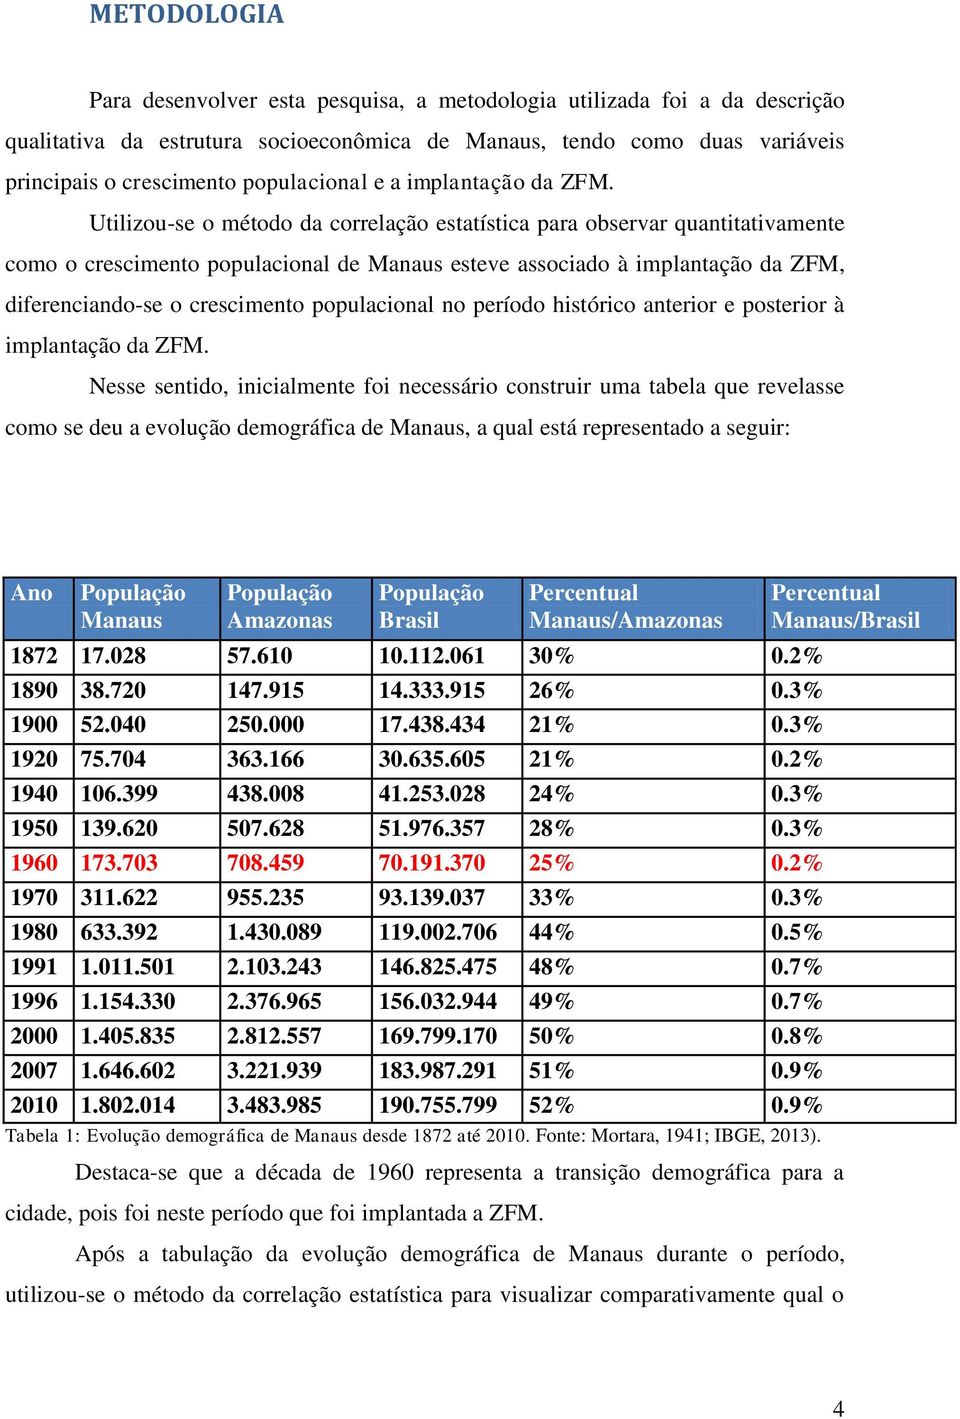 Utilizou-se o método da correlação estatística para observar quantitativamente como o crescimento populacional de Manaus esteve associado à implantação da ZFM, diferenciando-se o crescimento